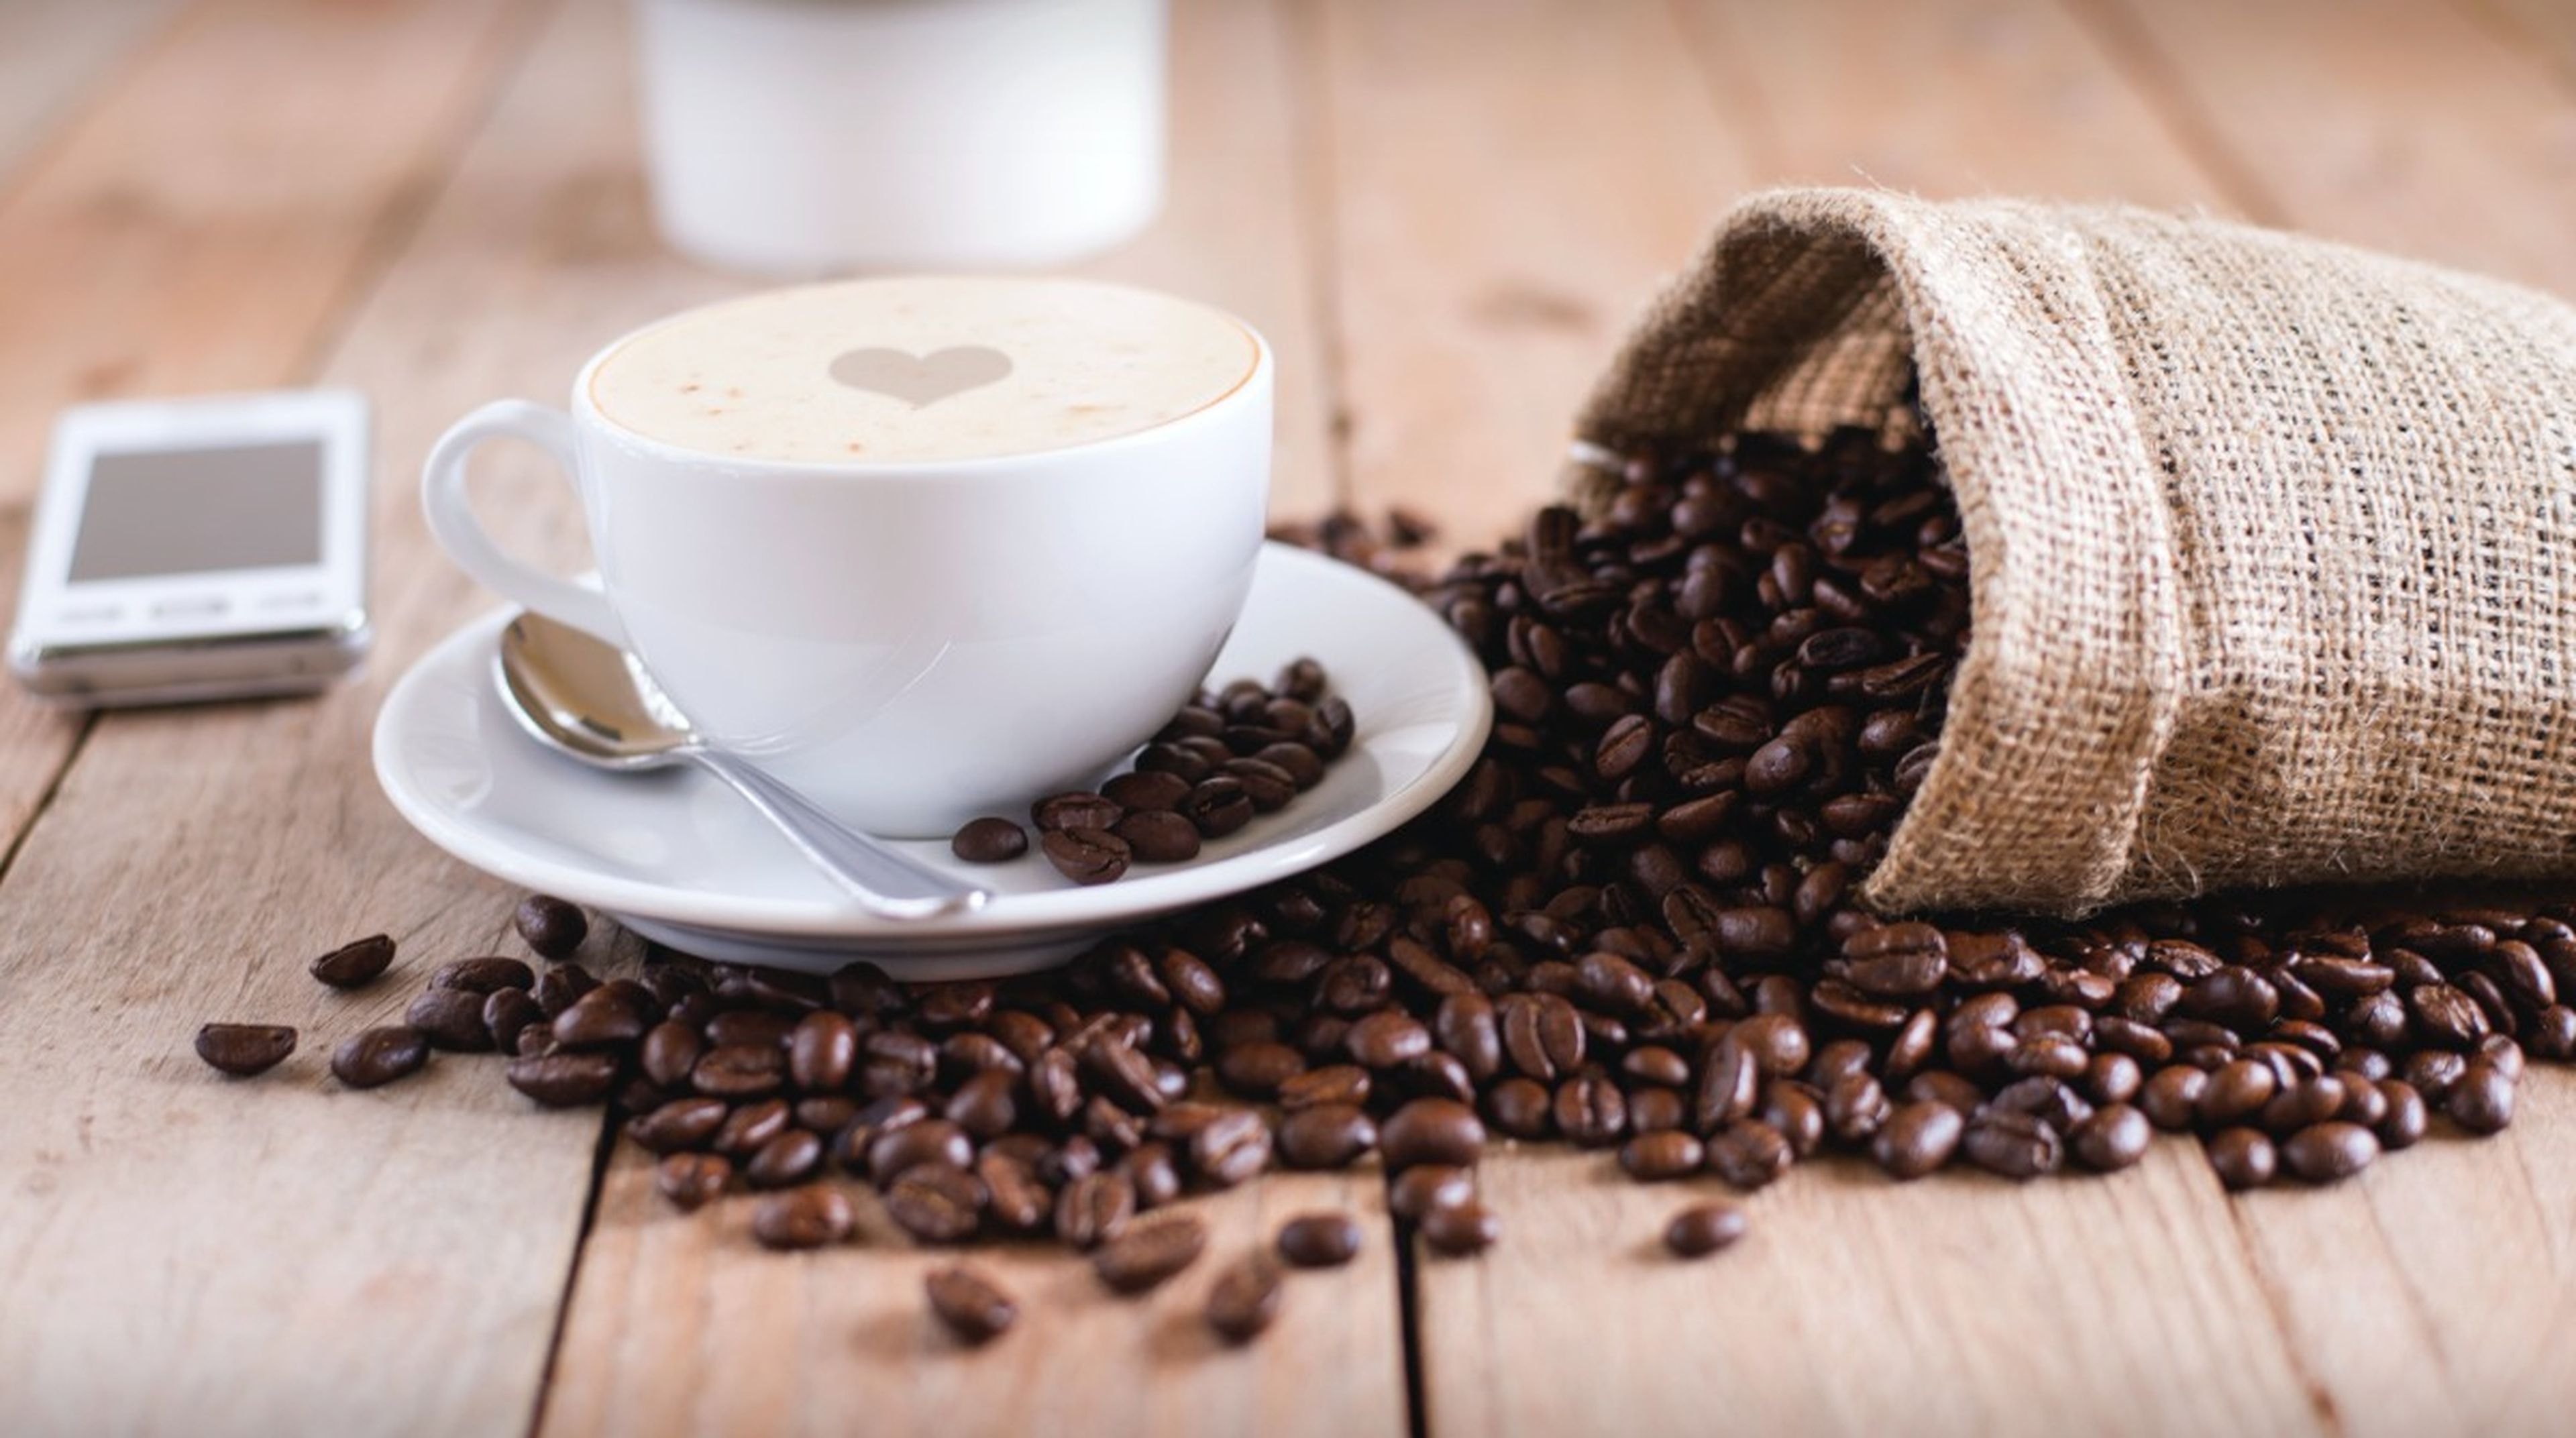 La OCU alerta sobre el excesivo contenido de cafeína en algunos cafés molidos de supermercado